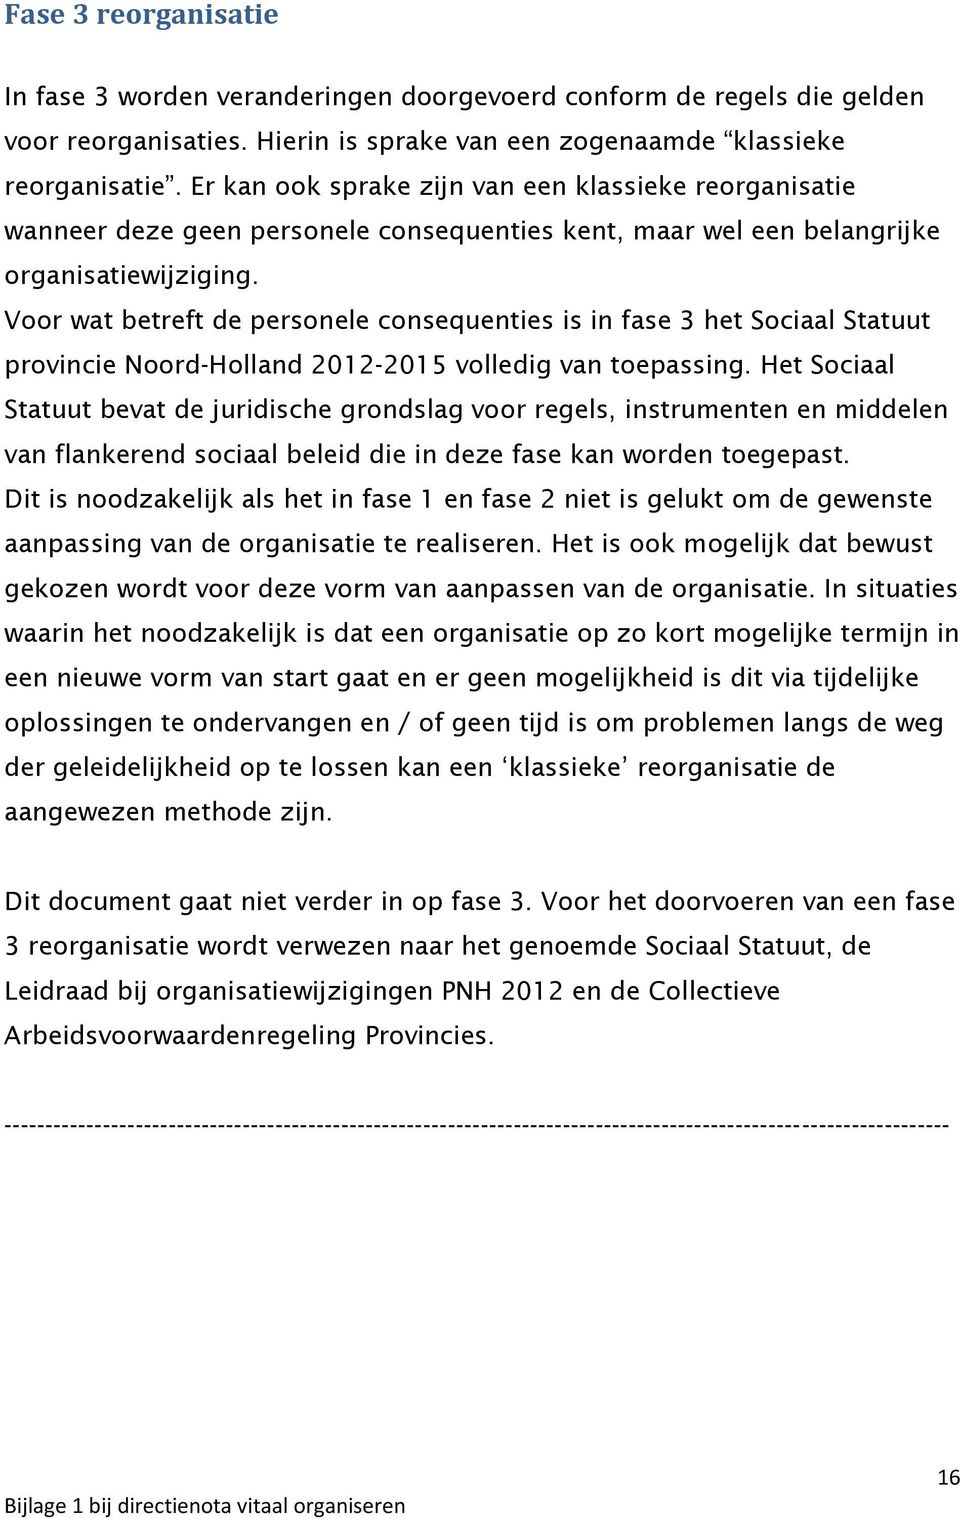 Voor wat betreft de personele consequenties is in fase 3 het Sociaal Statuut provincie Noord-Holland 2012-2015 volledig van toepassing.